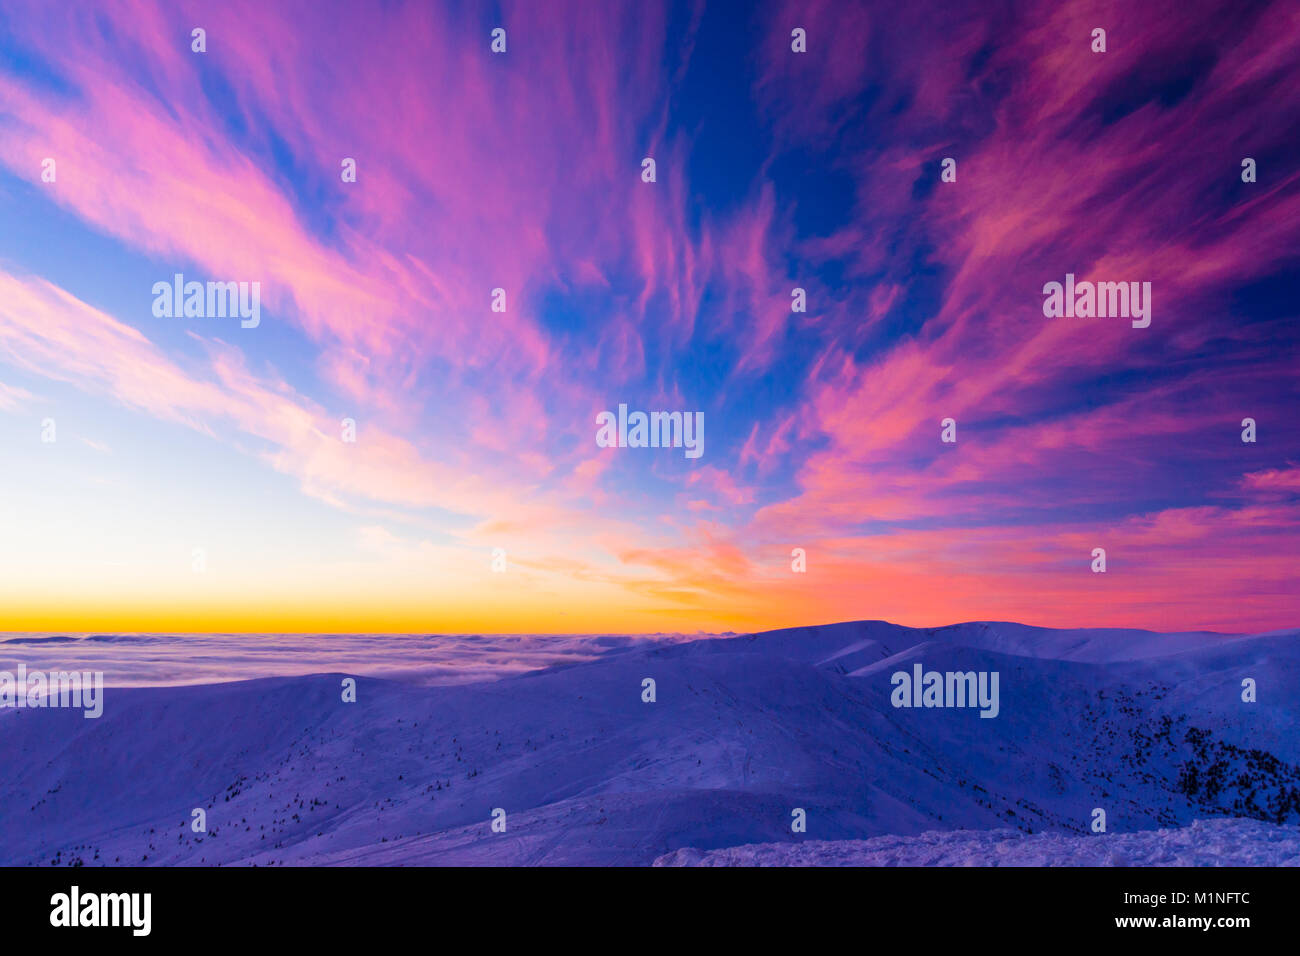 Incroyable coucher de soleil colorés dans les montagnes avec des nuages de forme ailes absract Banque D'Images